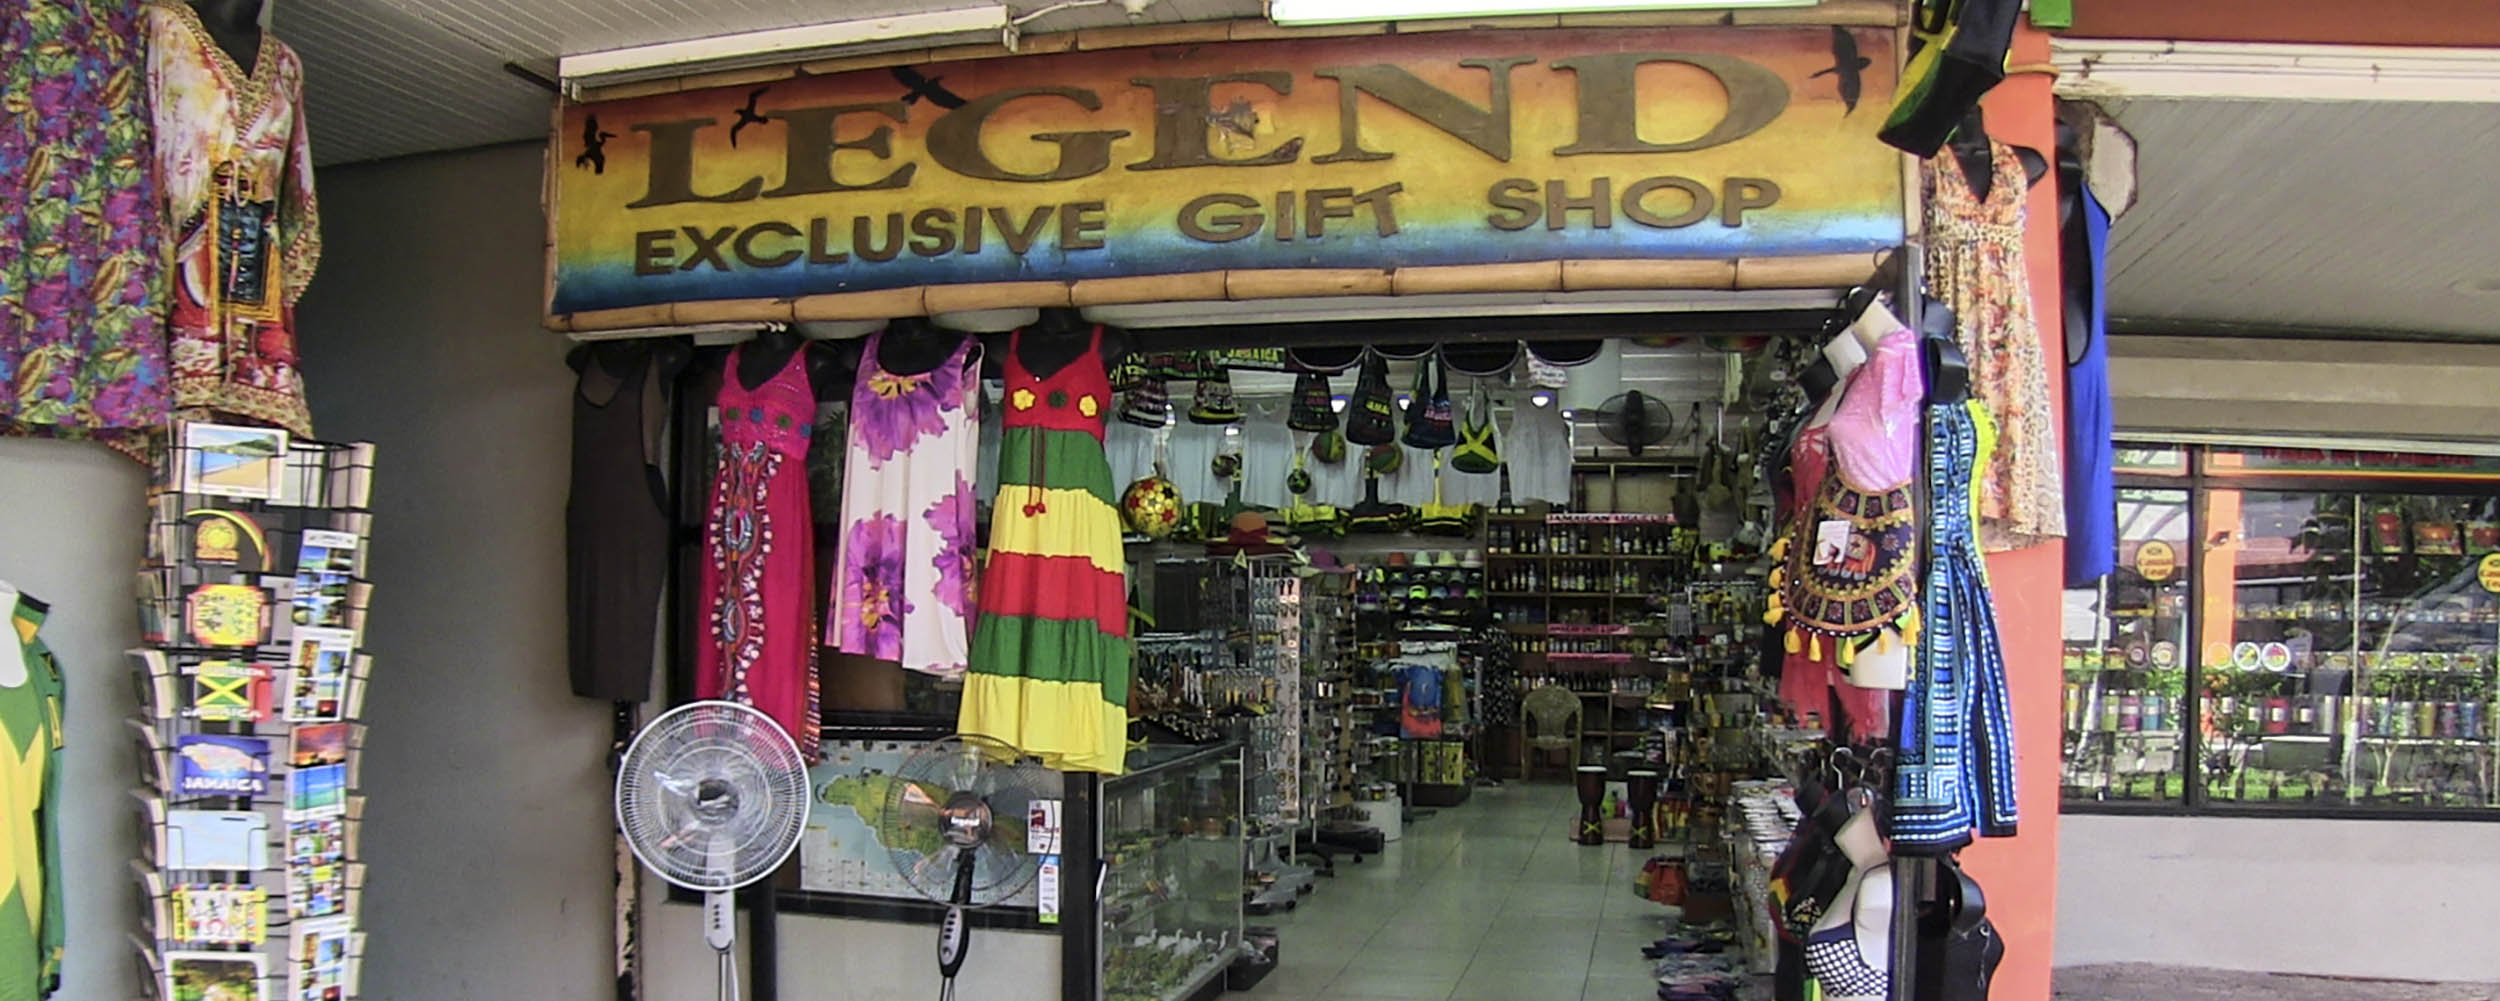 Legend's Exclusive Gift Shop - Sunshine Village Complex - Negril Jamaica